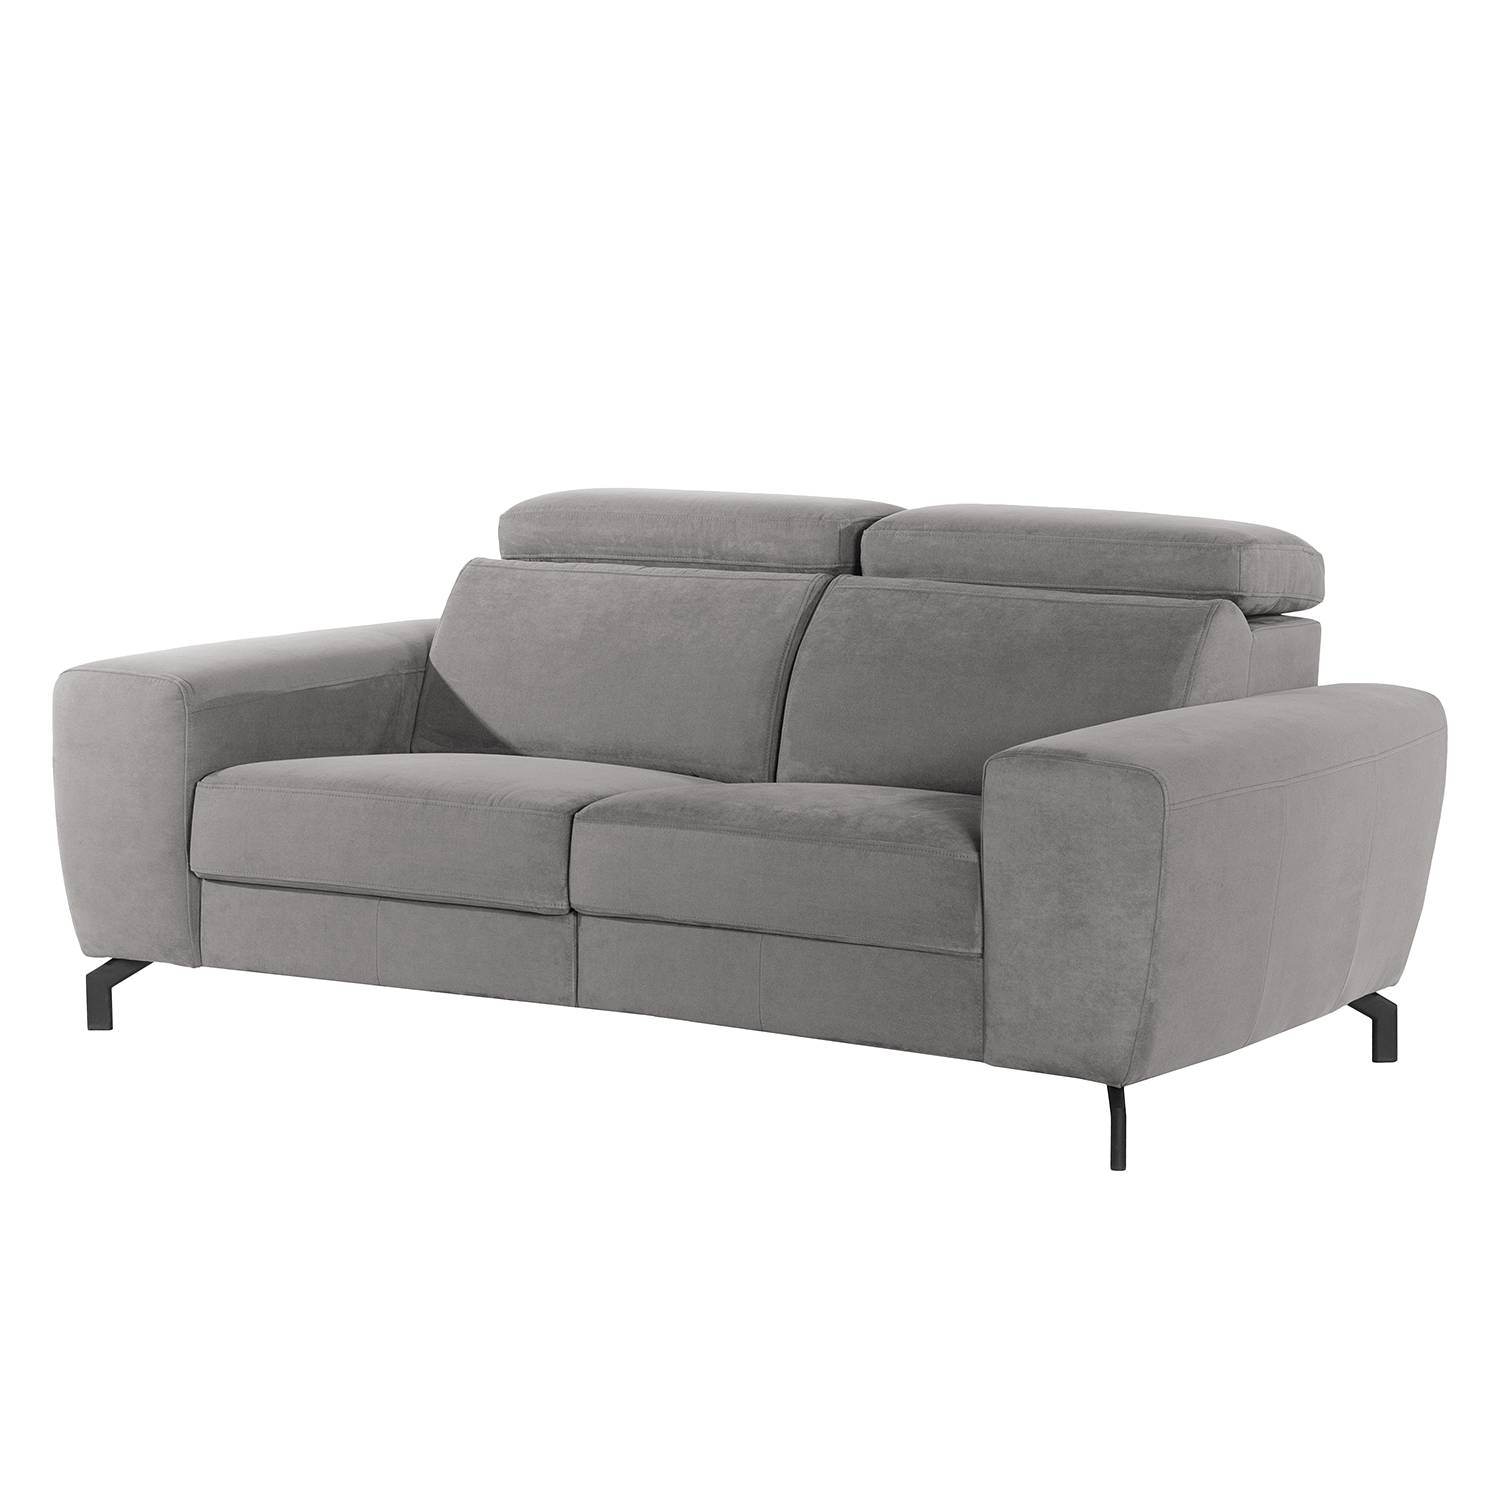 Sofa Opia (2-Sitzer) kaufen | home24